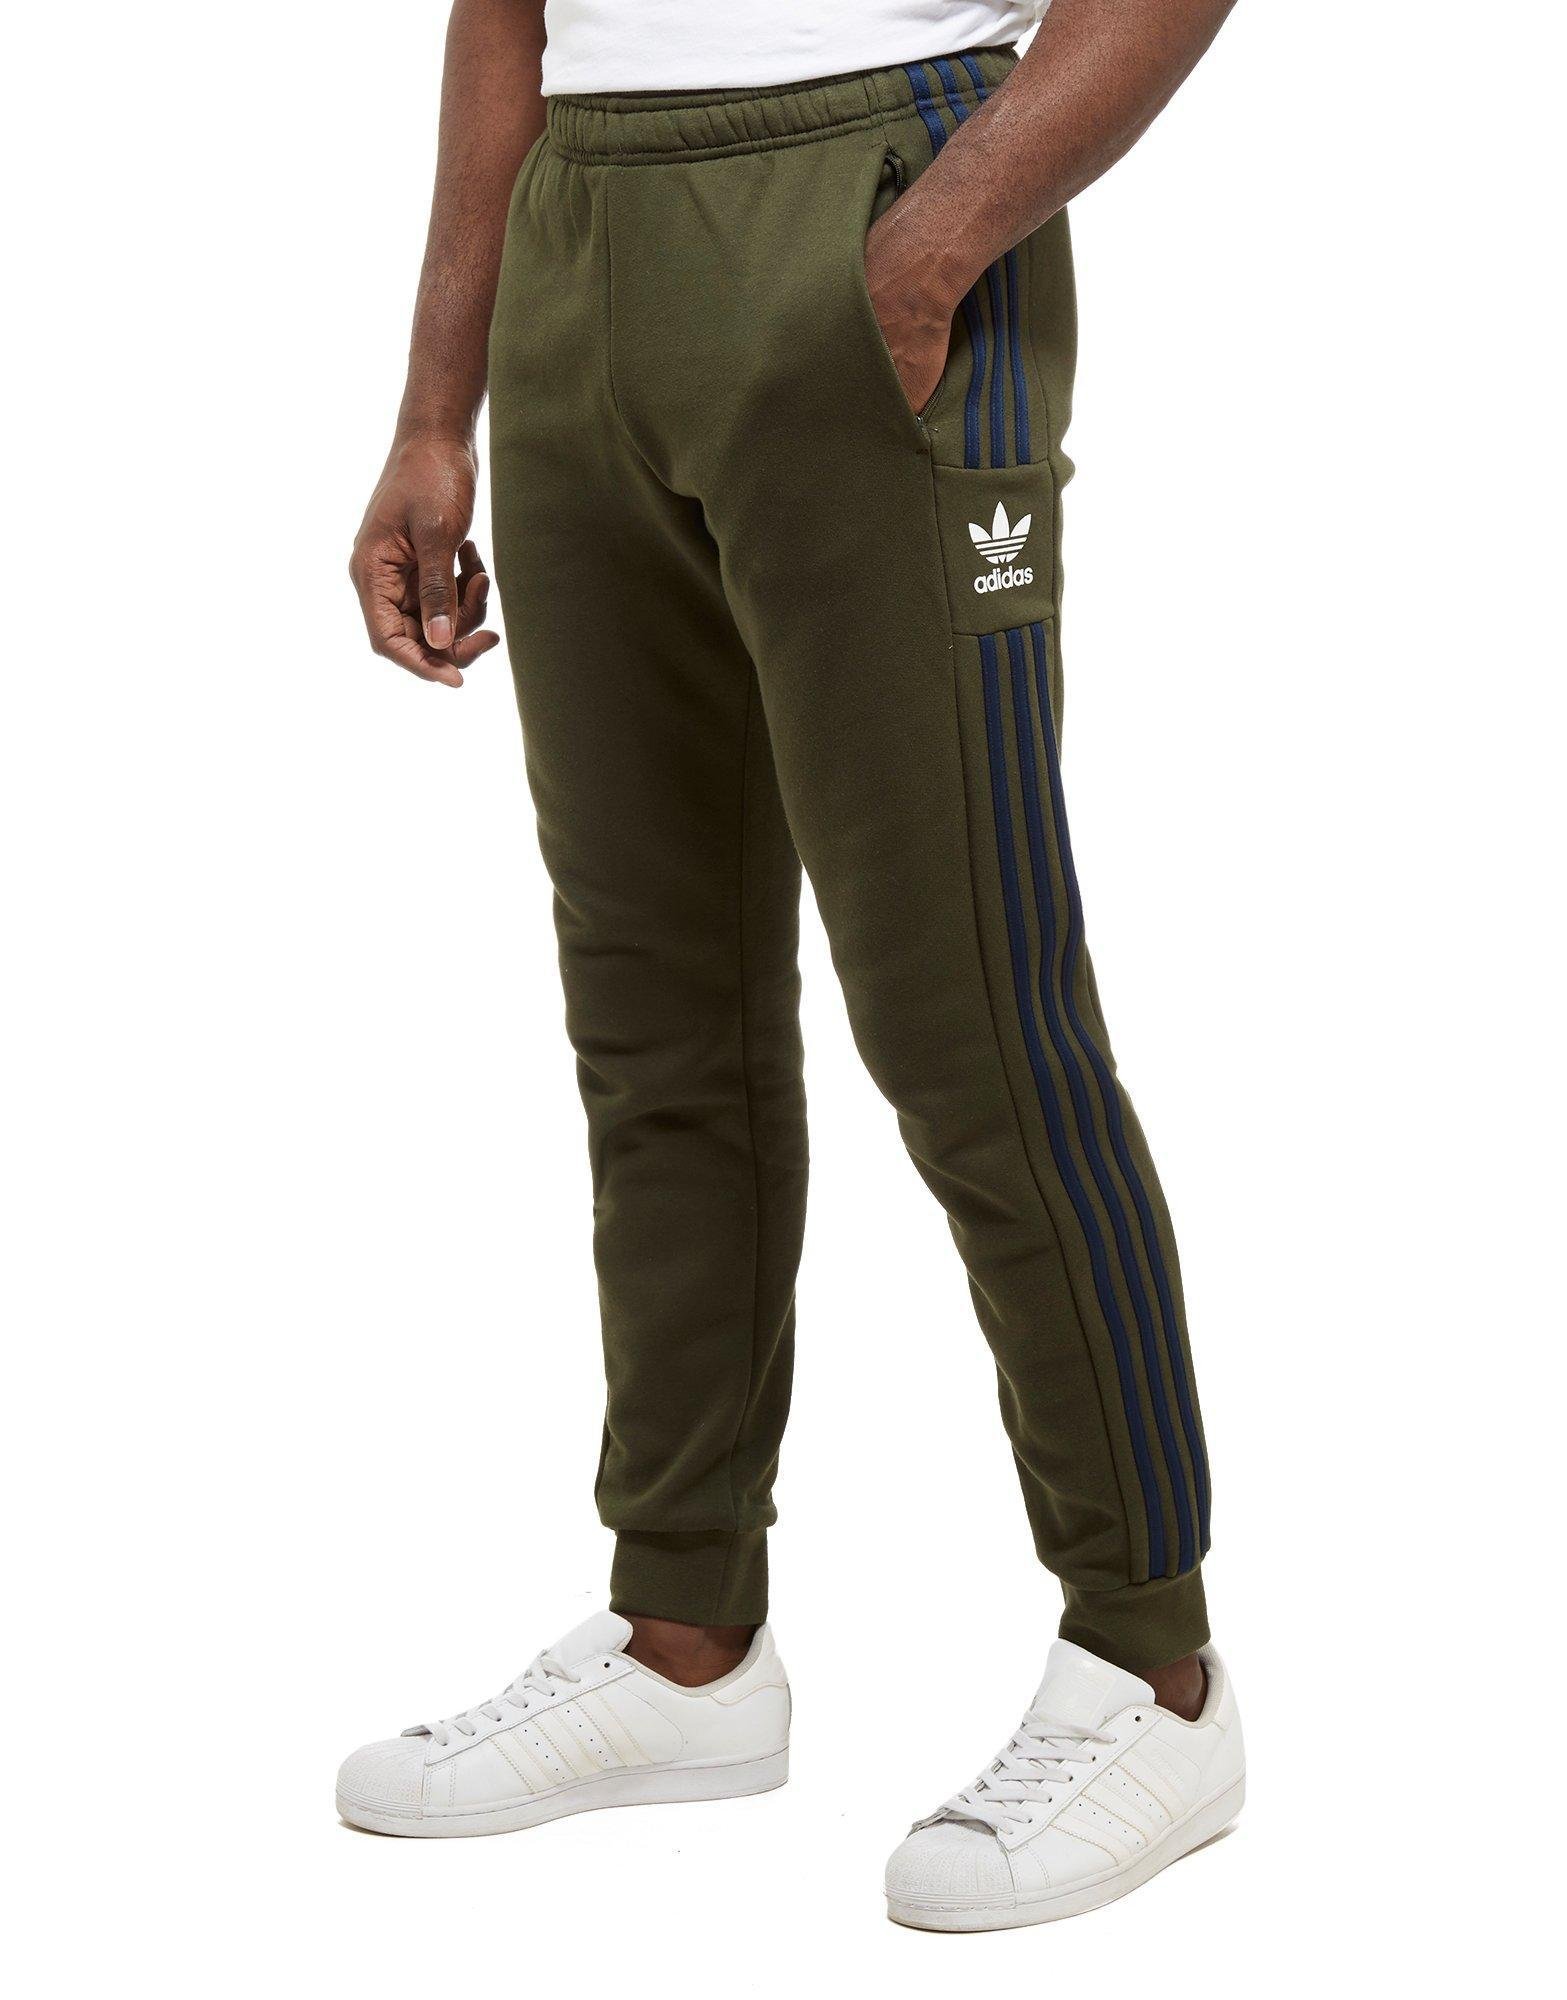 adidas Originals Fleece Id96 Track Pants in Khaki/Navy (Green) for Men ...